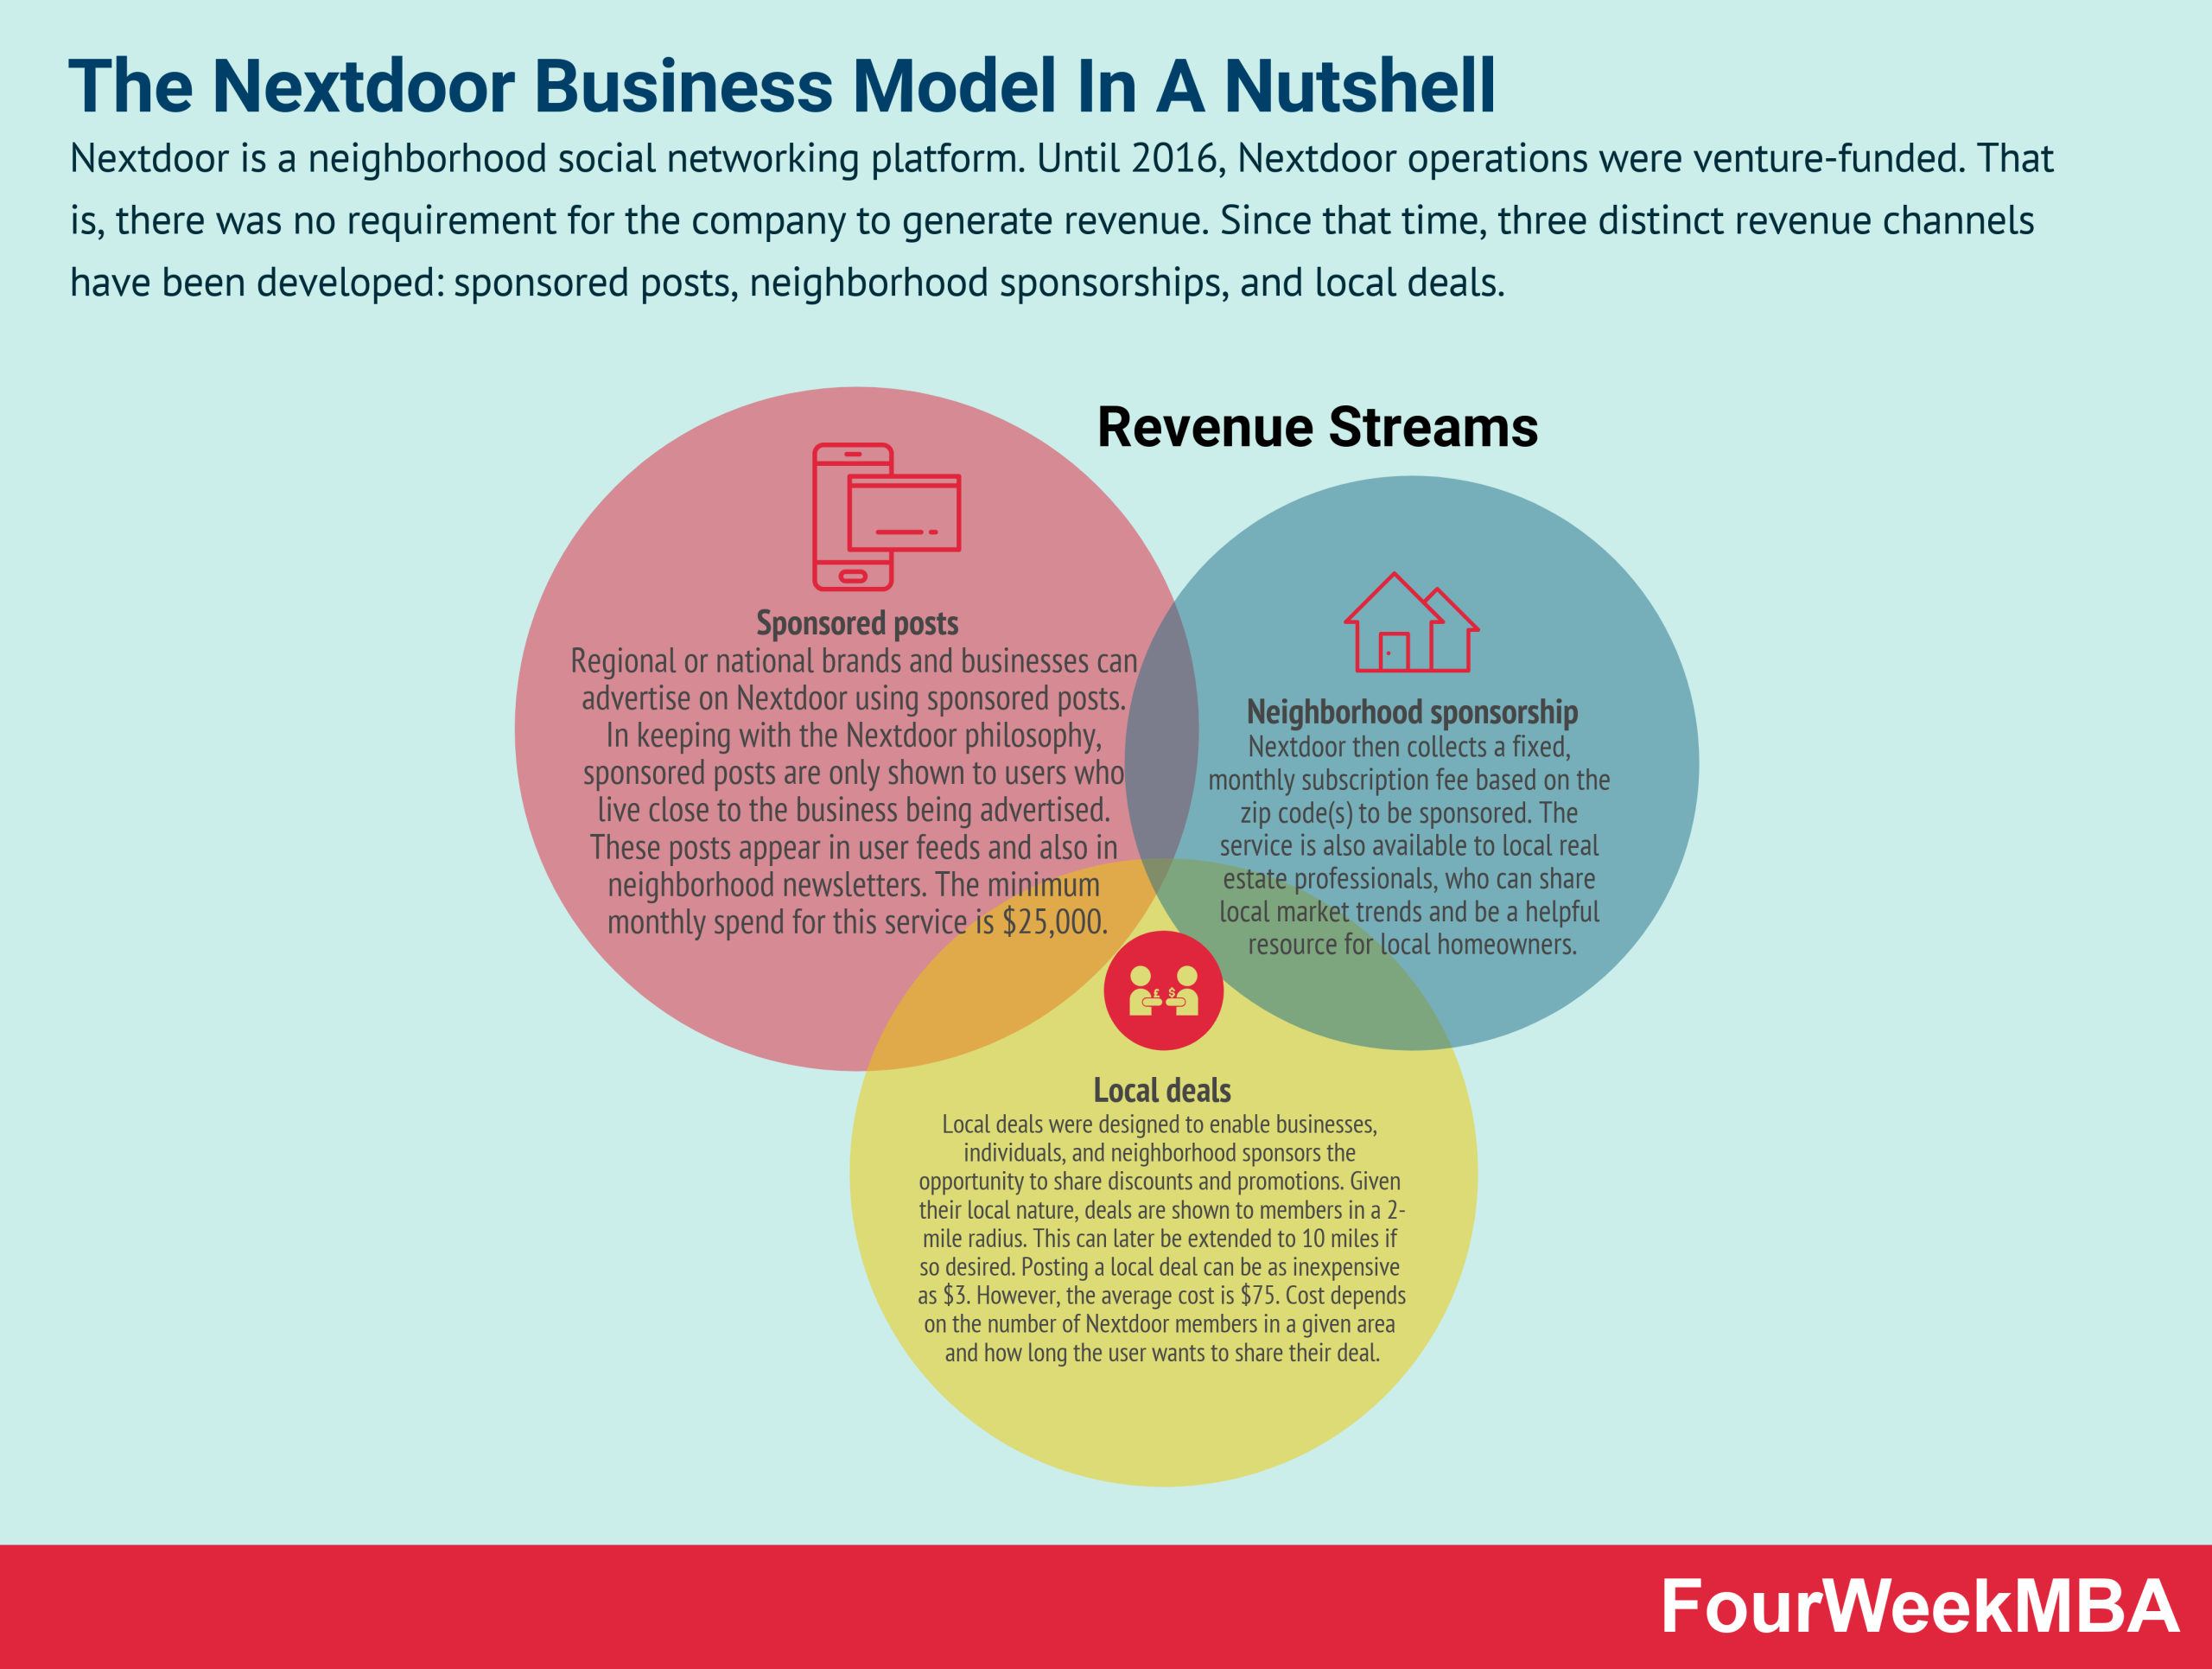 How Does Nextdoor Make Money? The Nextdoor Business Model In A Nutshell ...